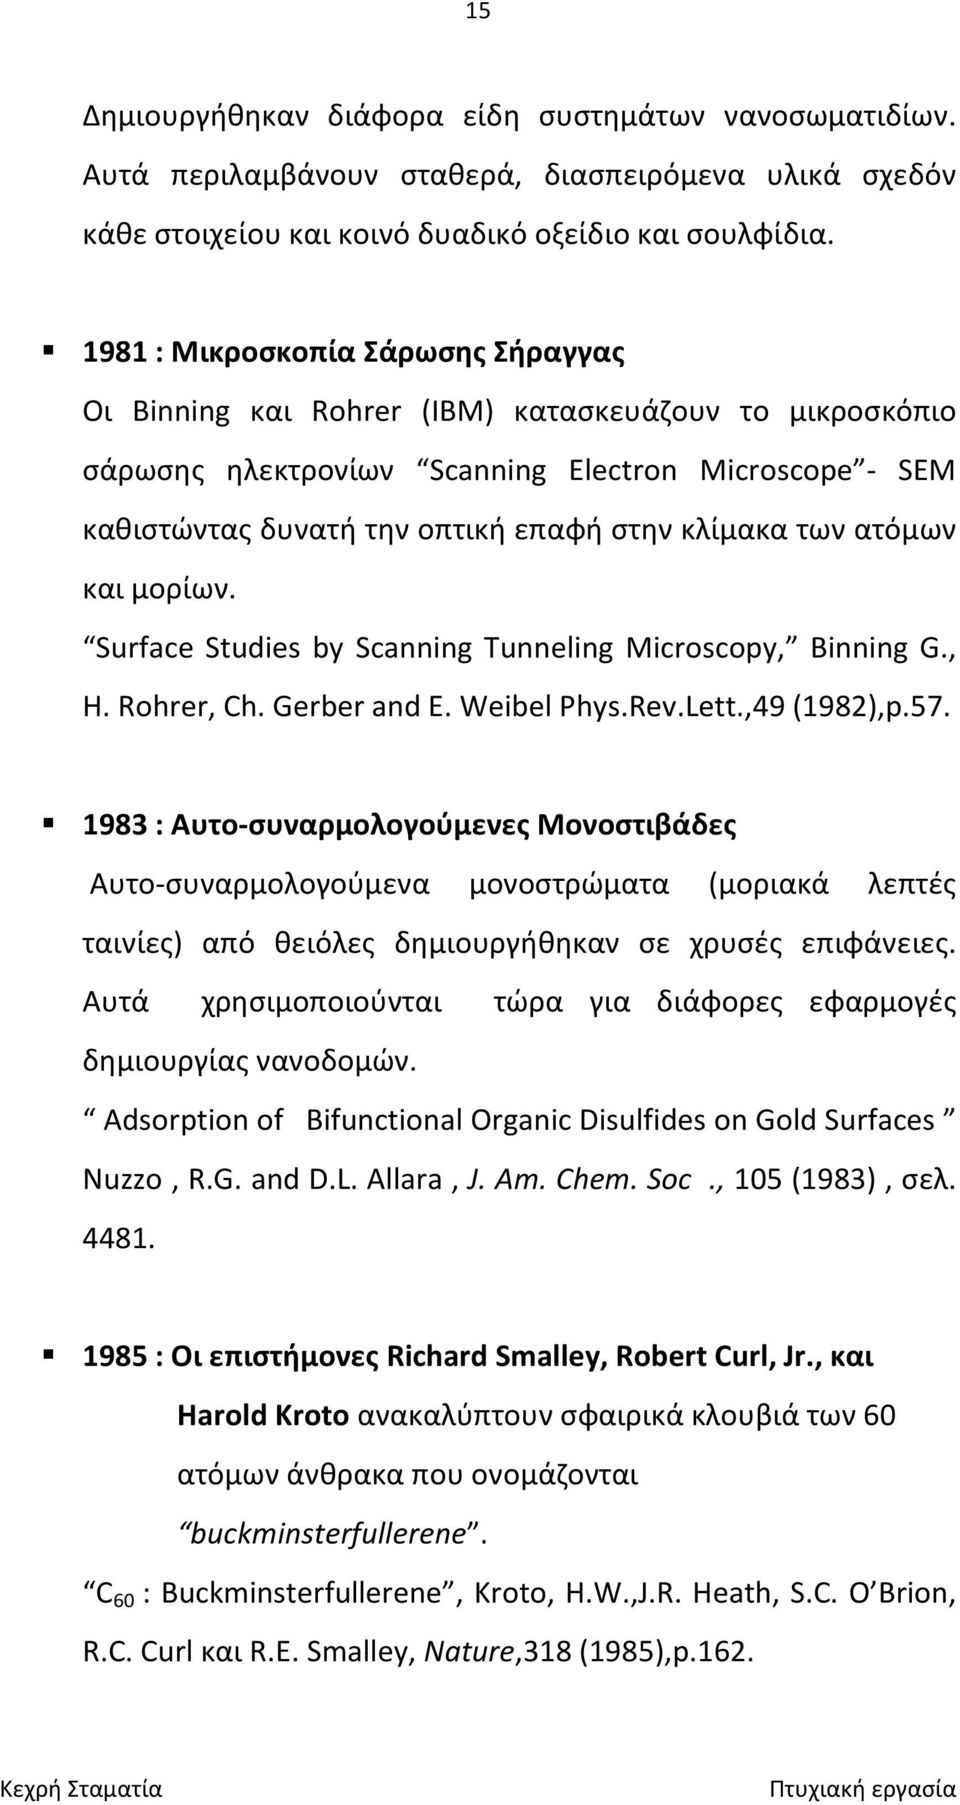 των ατόμων και μορίων. Surface Studies by Scanning Tunneling Microscopy, Binning G., H. Rohrer, Ch. Gerber and E. Weibel Phys.Rev.Lett.,49 (1982),p.57.